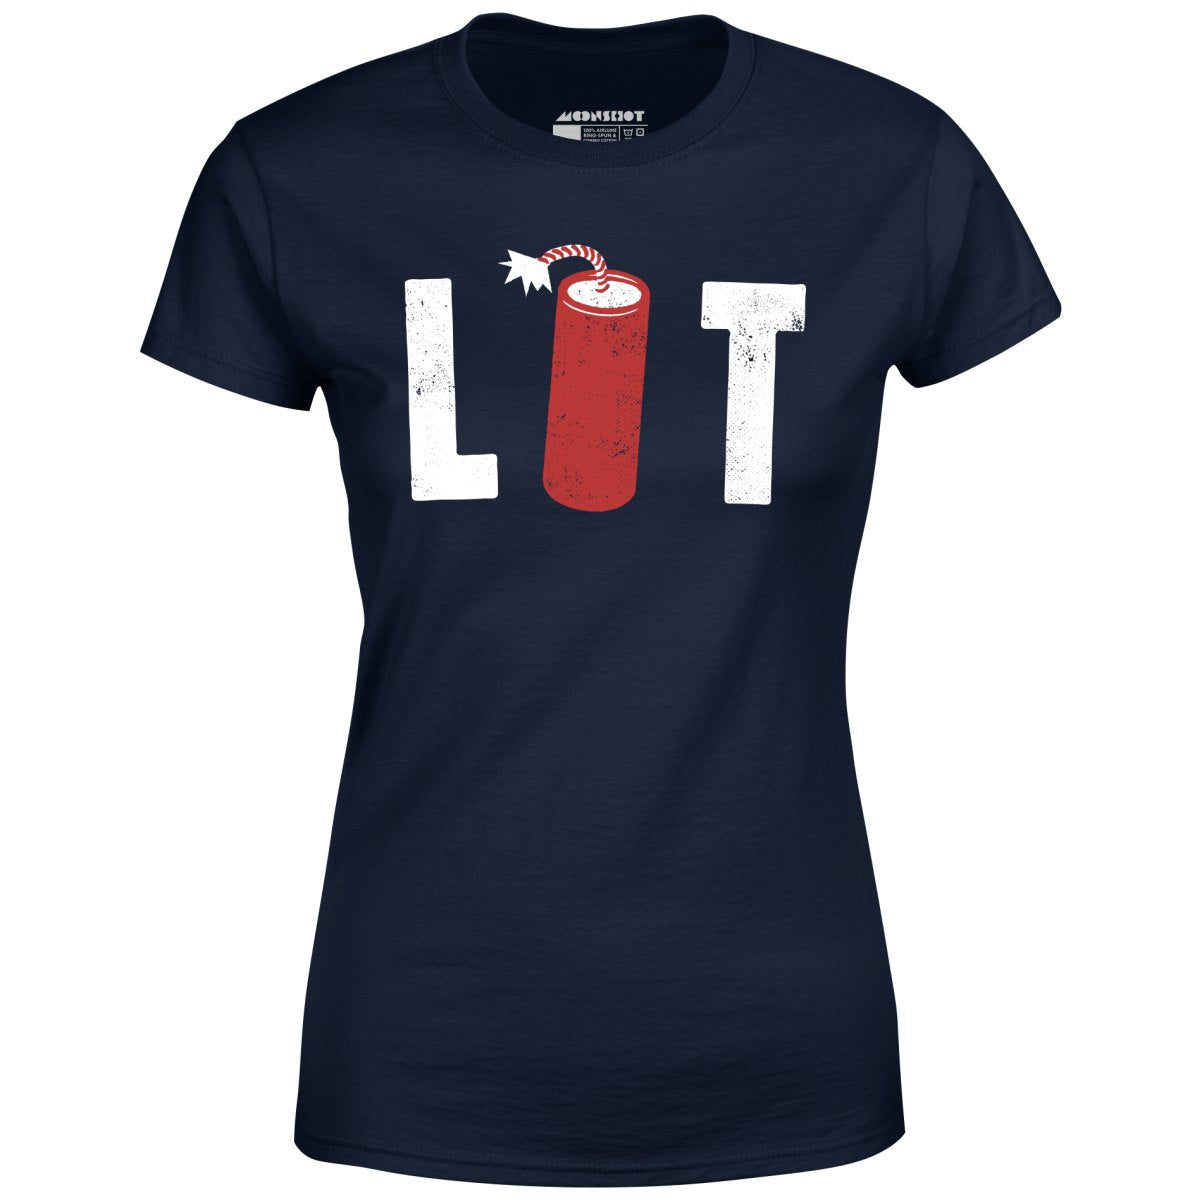 Lit - Women's T-Shirt